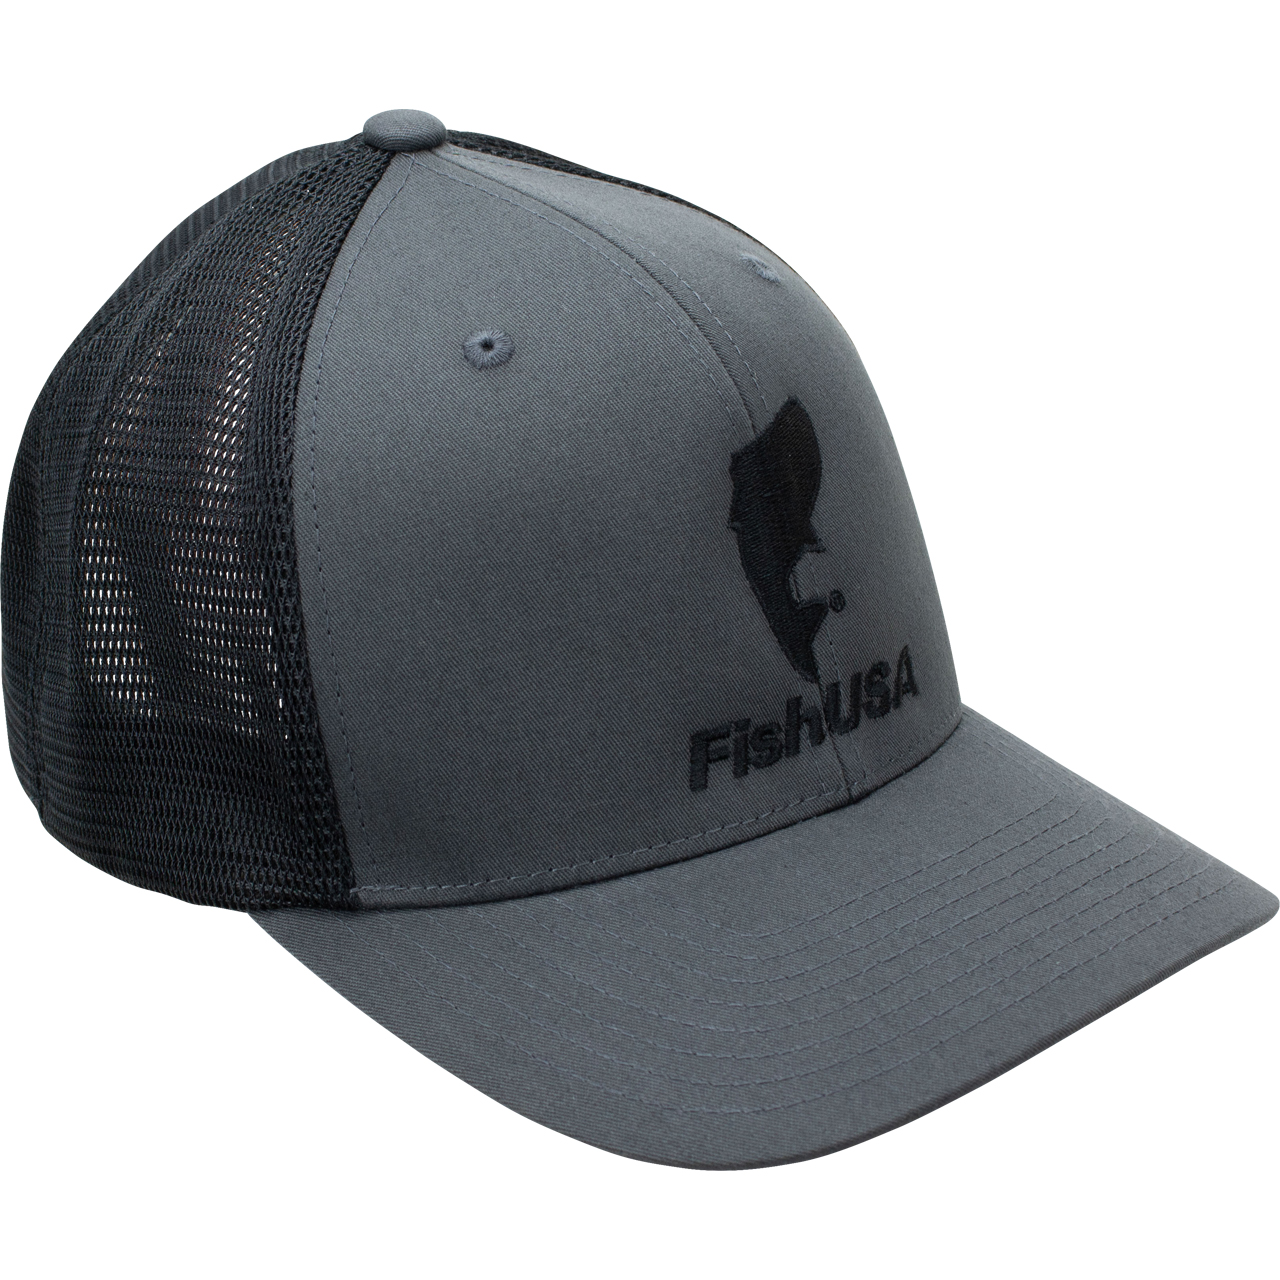 Hat FishUSA | Flexfit FishUSA Trucker